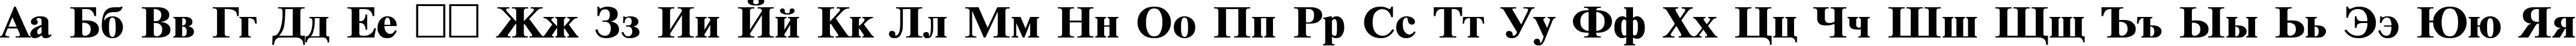 Пример написания русского алфавита шрифтом TimesET110B